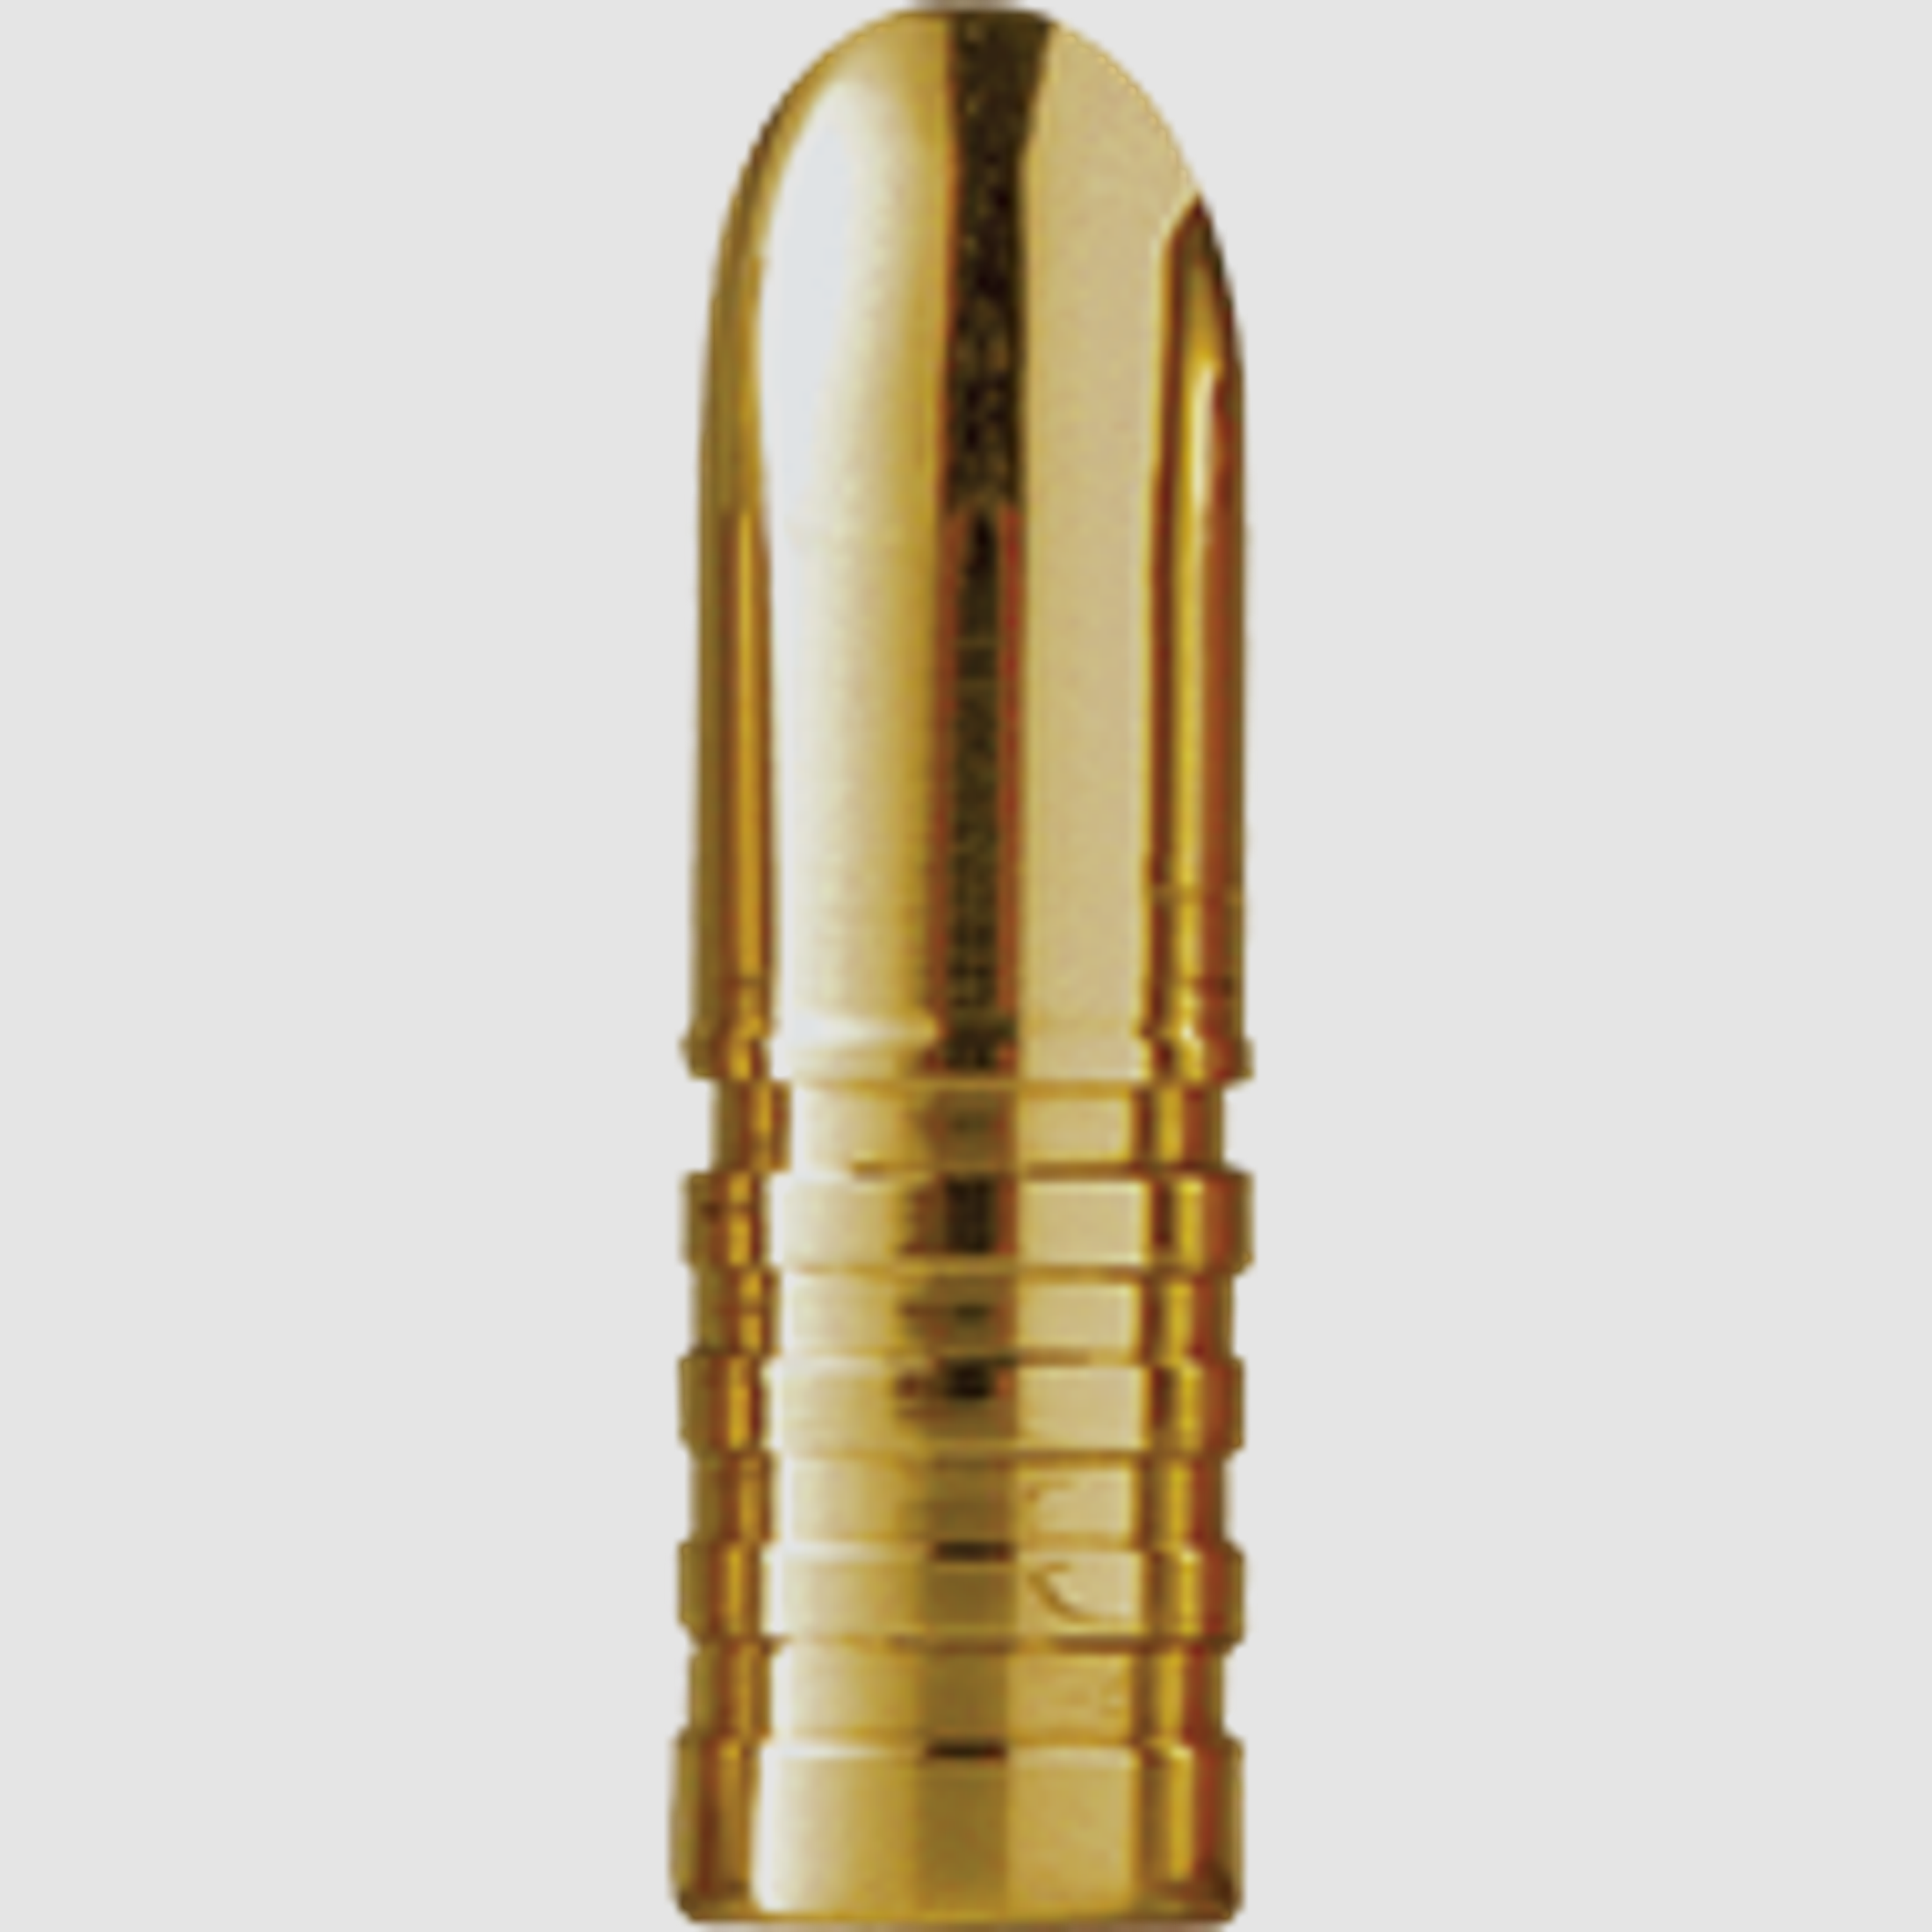 Barnes Geschoss .366 / 9,3mm 250GR Banded Solid 50 Stück